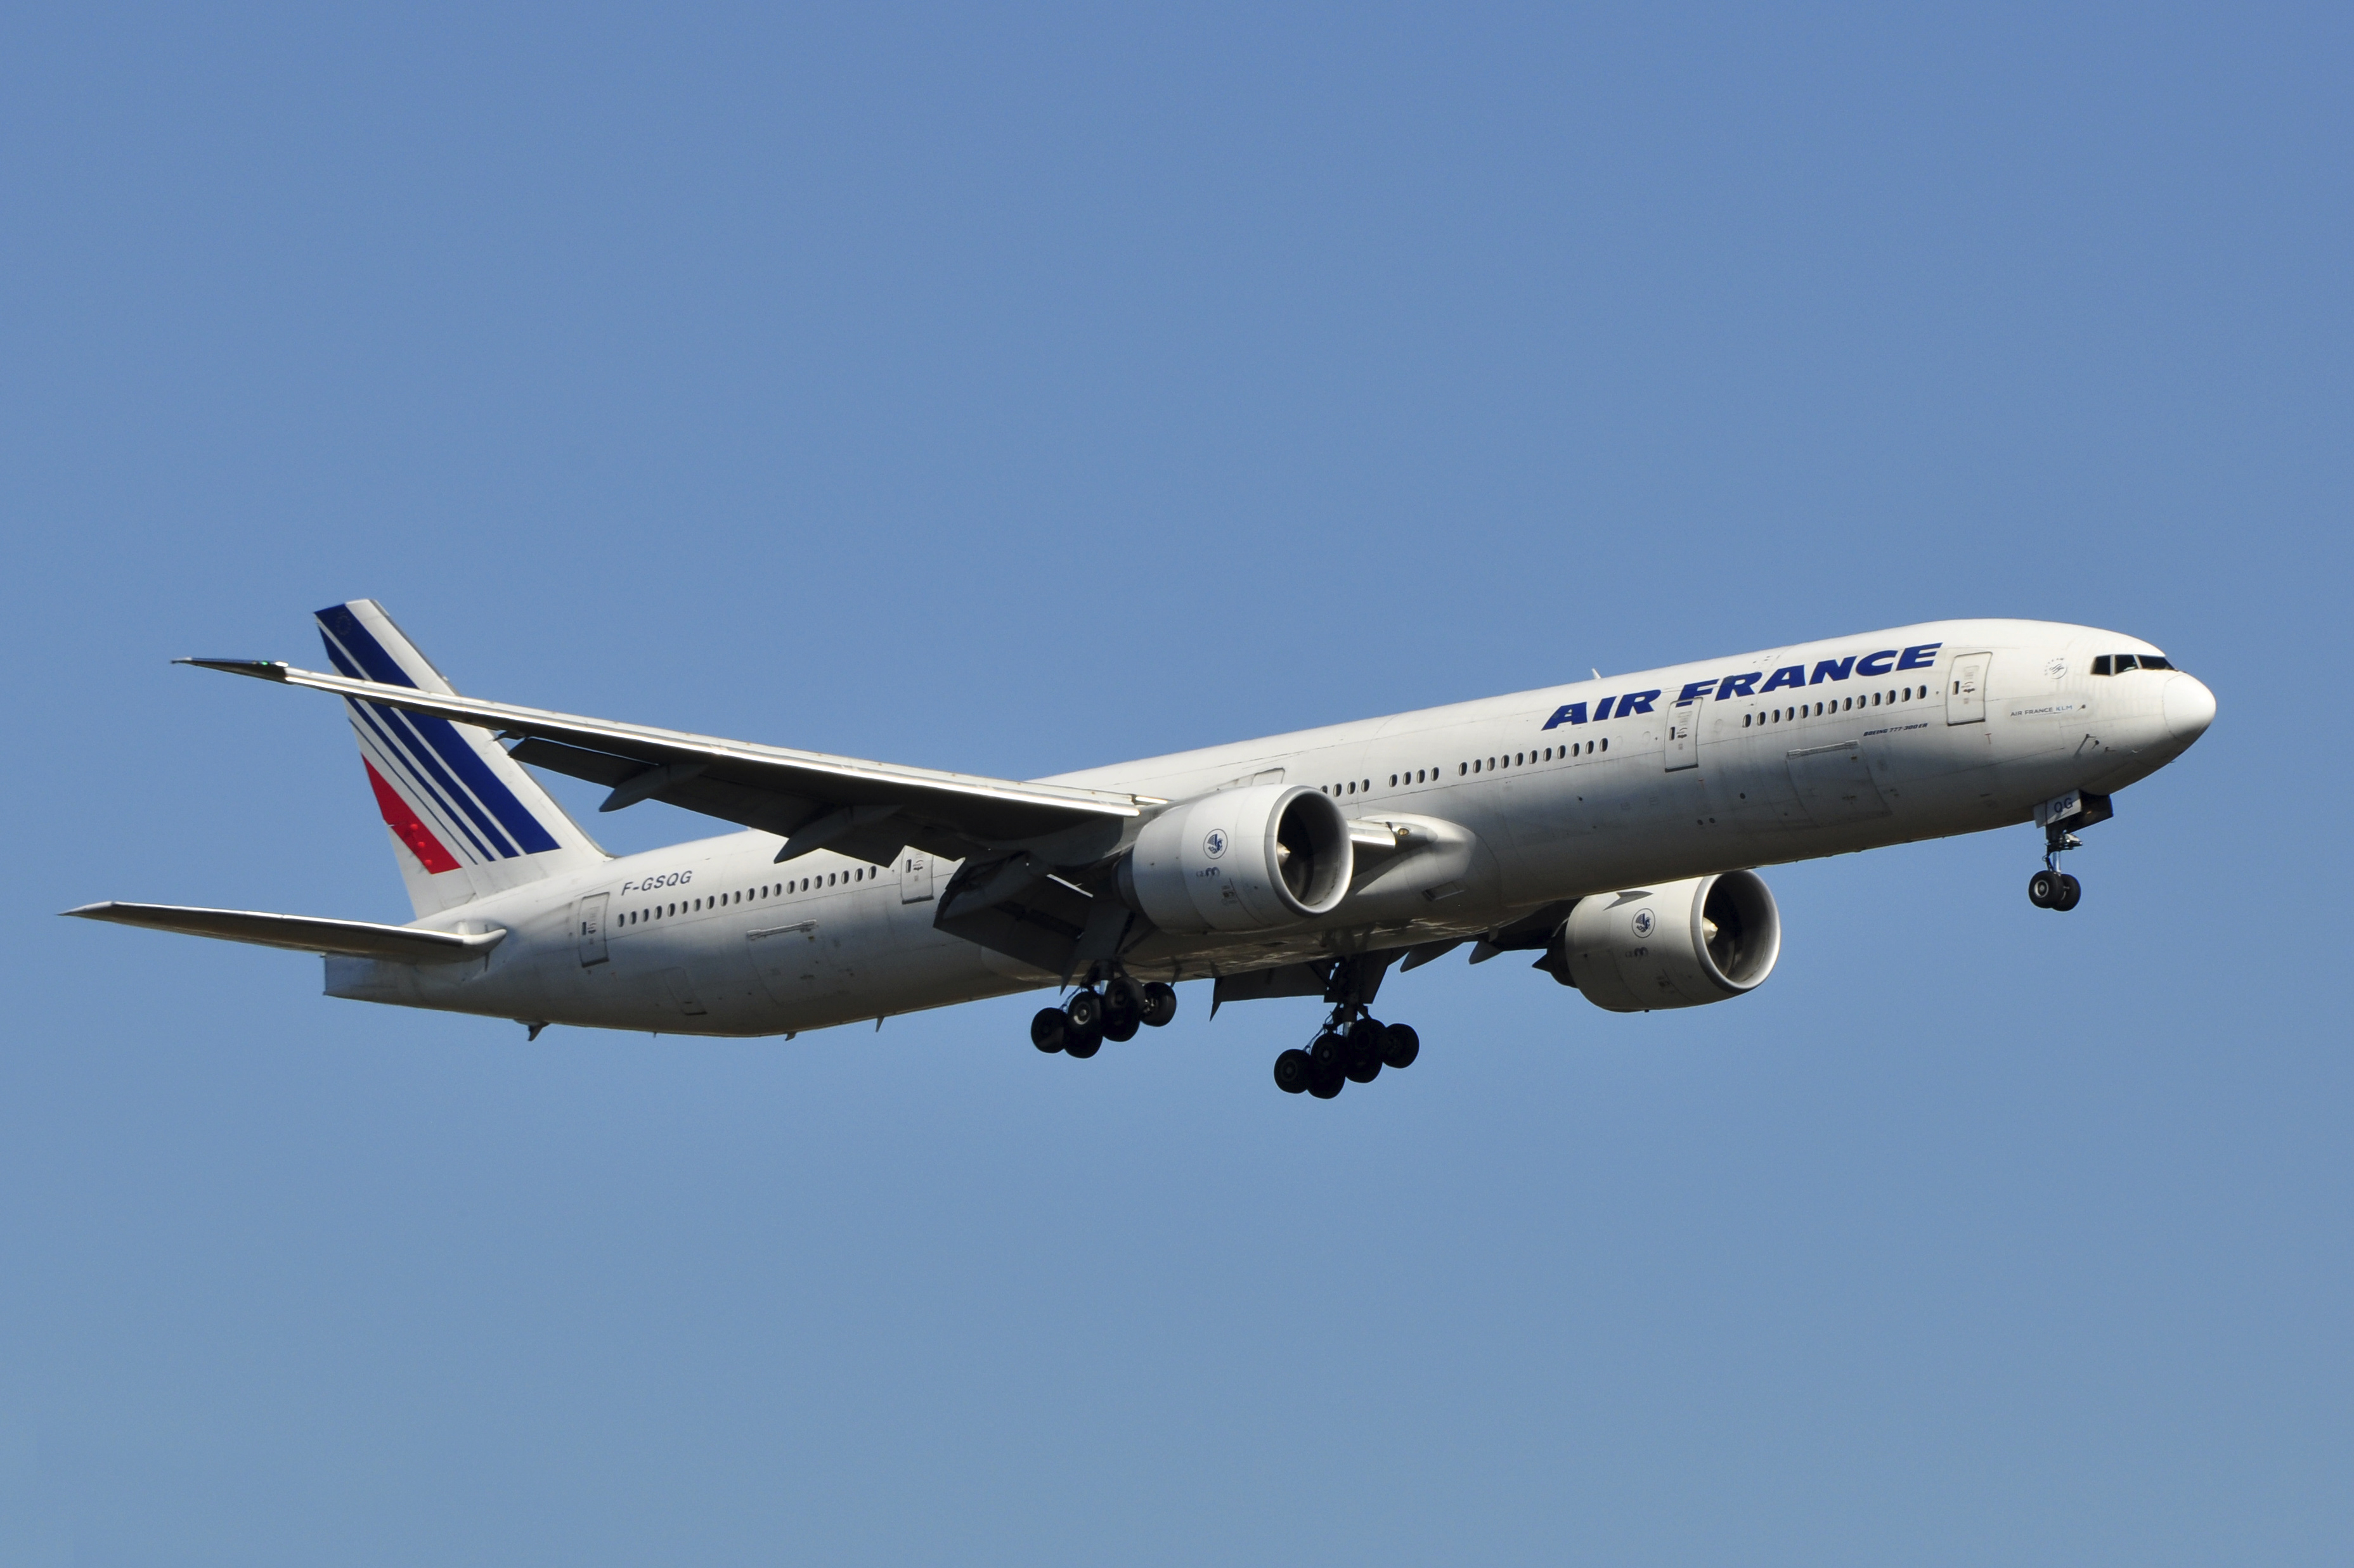 Letadlo Air France málem narazilo do sopky, vyhýbalo se bouři